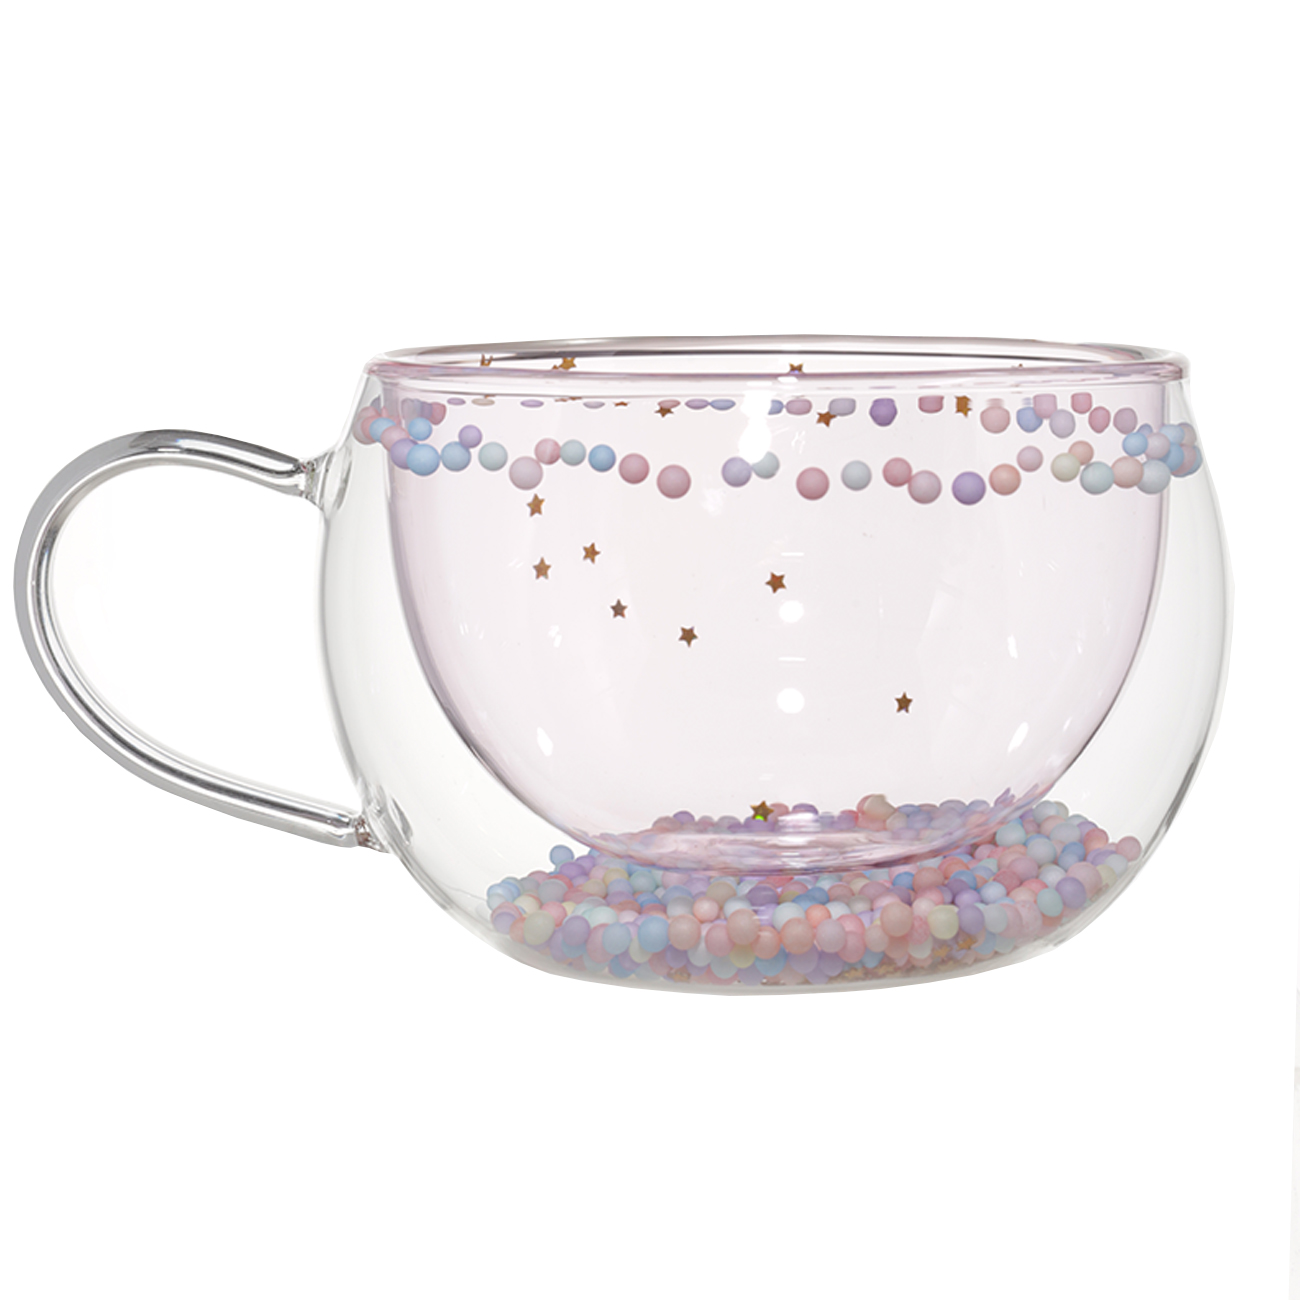 Кружка, 270 мл, с шариками, стекло Б, розовая, Звезды, Air sparkly изображение № 2